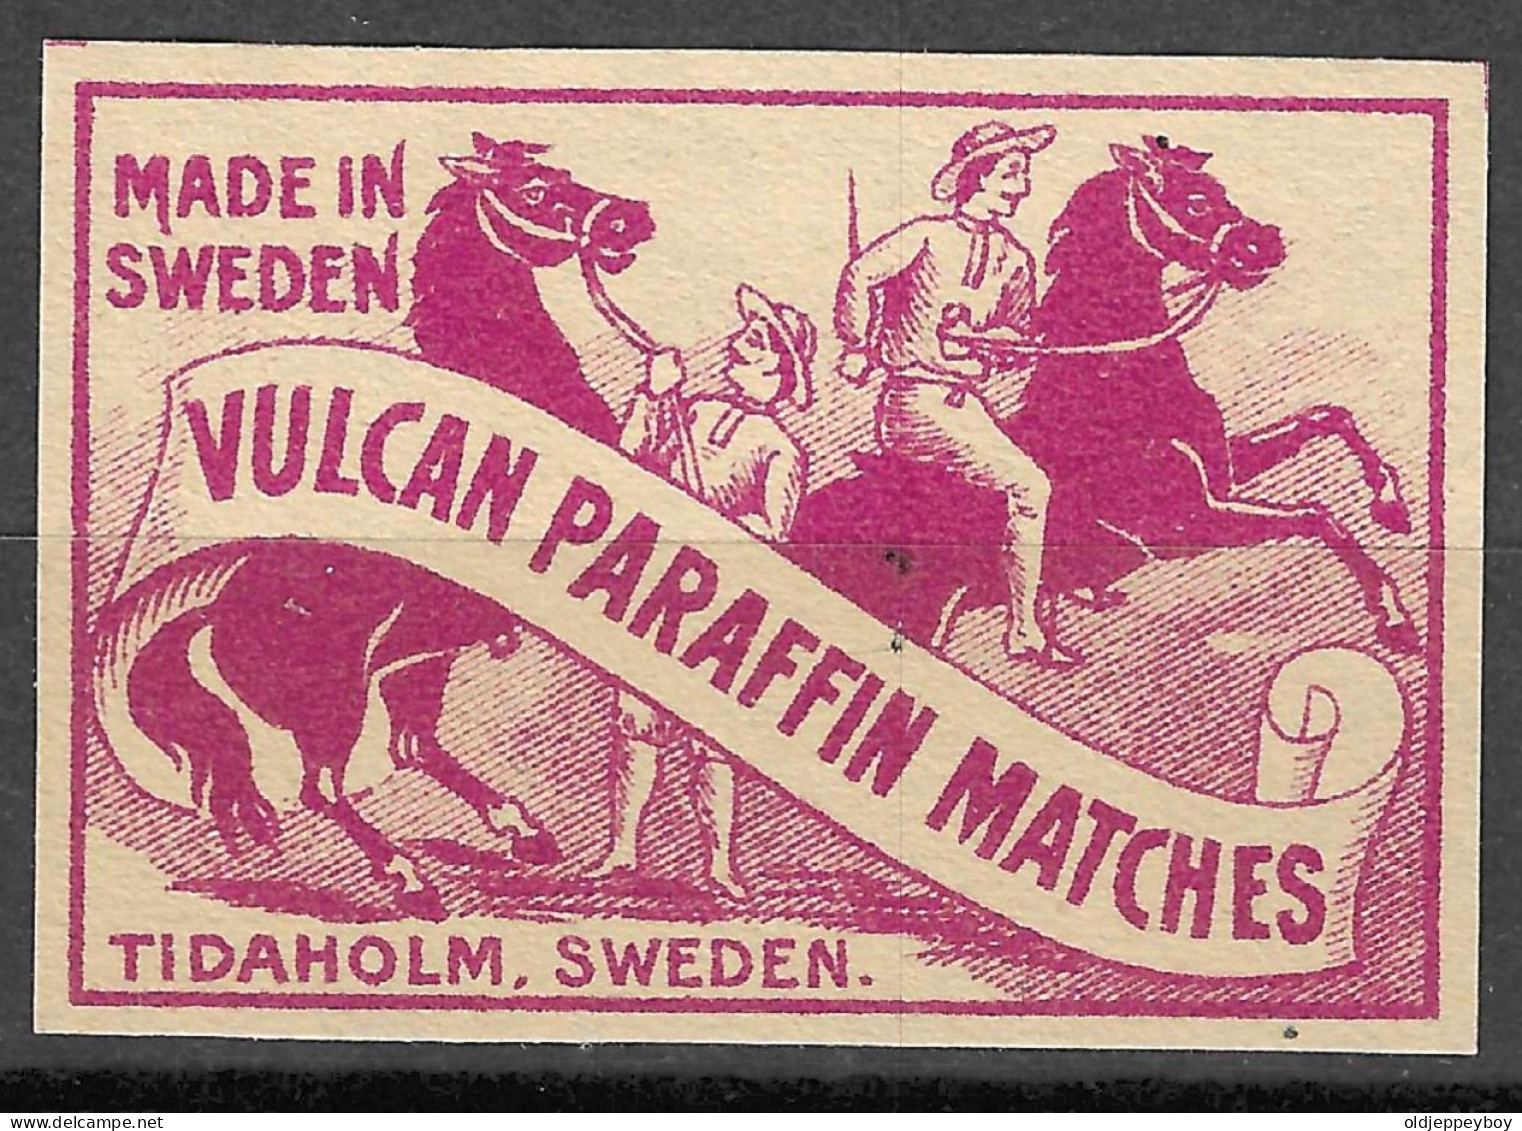  MADE  IN SWEDEN TIDAHOLM   VINTAGE Phillumeny MATCHBOX LABEL VULCAN PARAFFIN  MATCHES  5  X 3.5 CM  - Luciferdozen - Etiketten